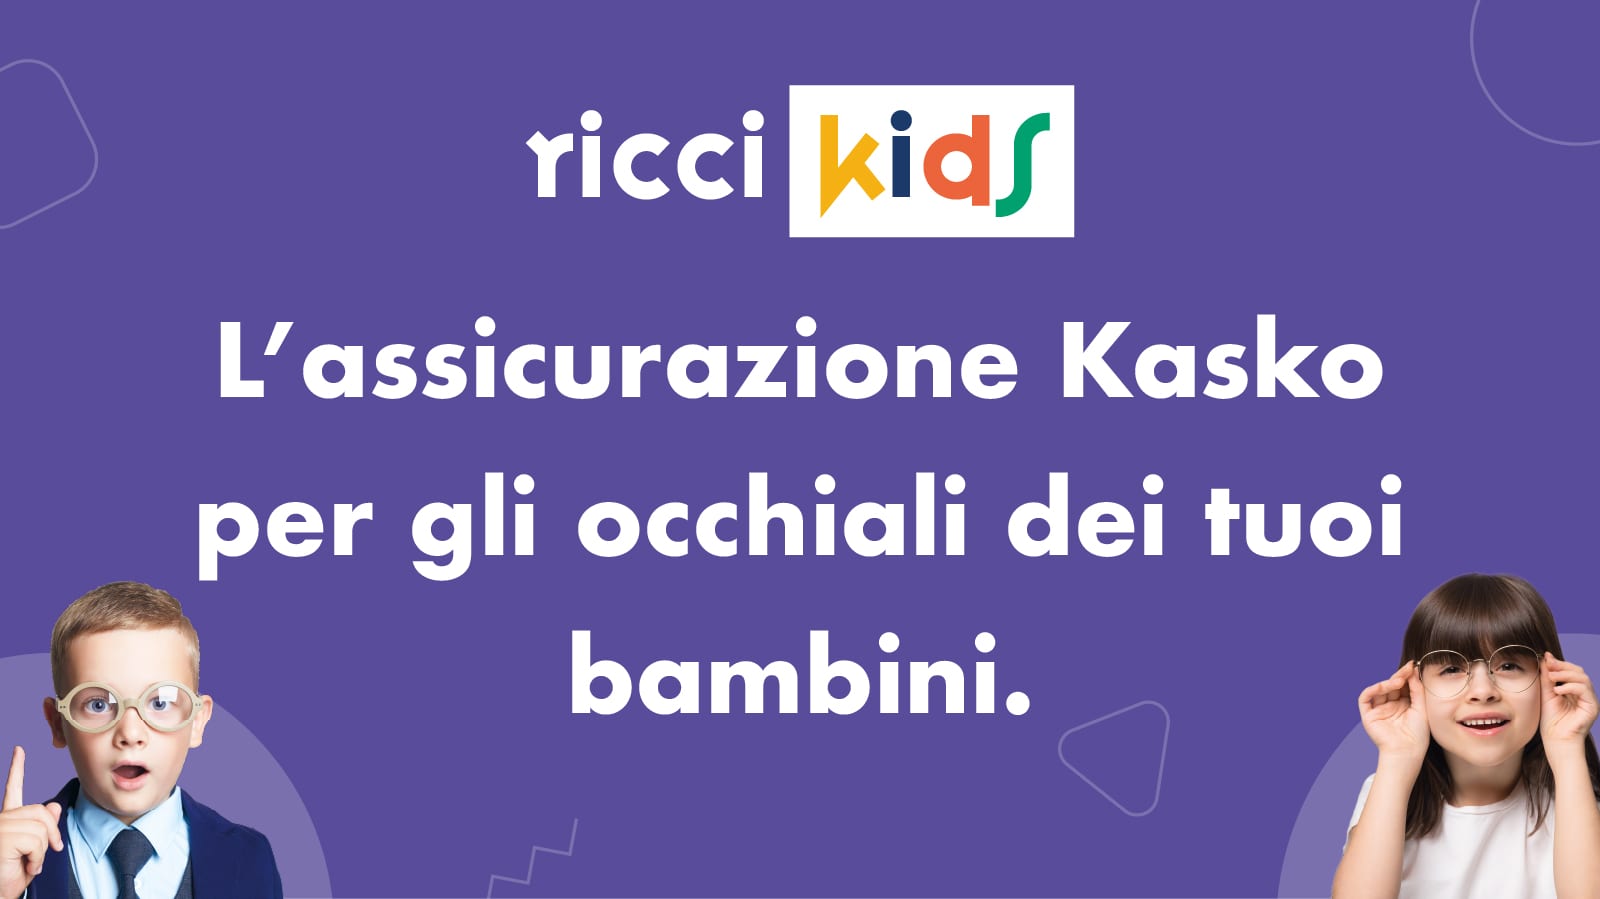 Assicurazione Kasko per gli occhiali dei tuoi bambini